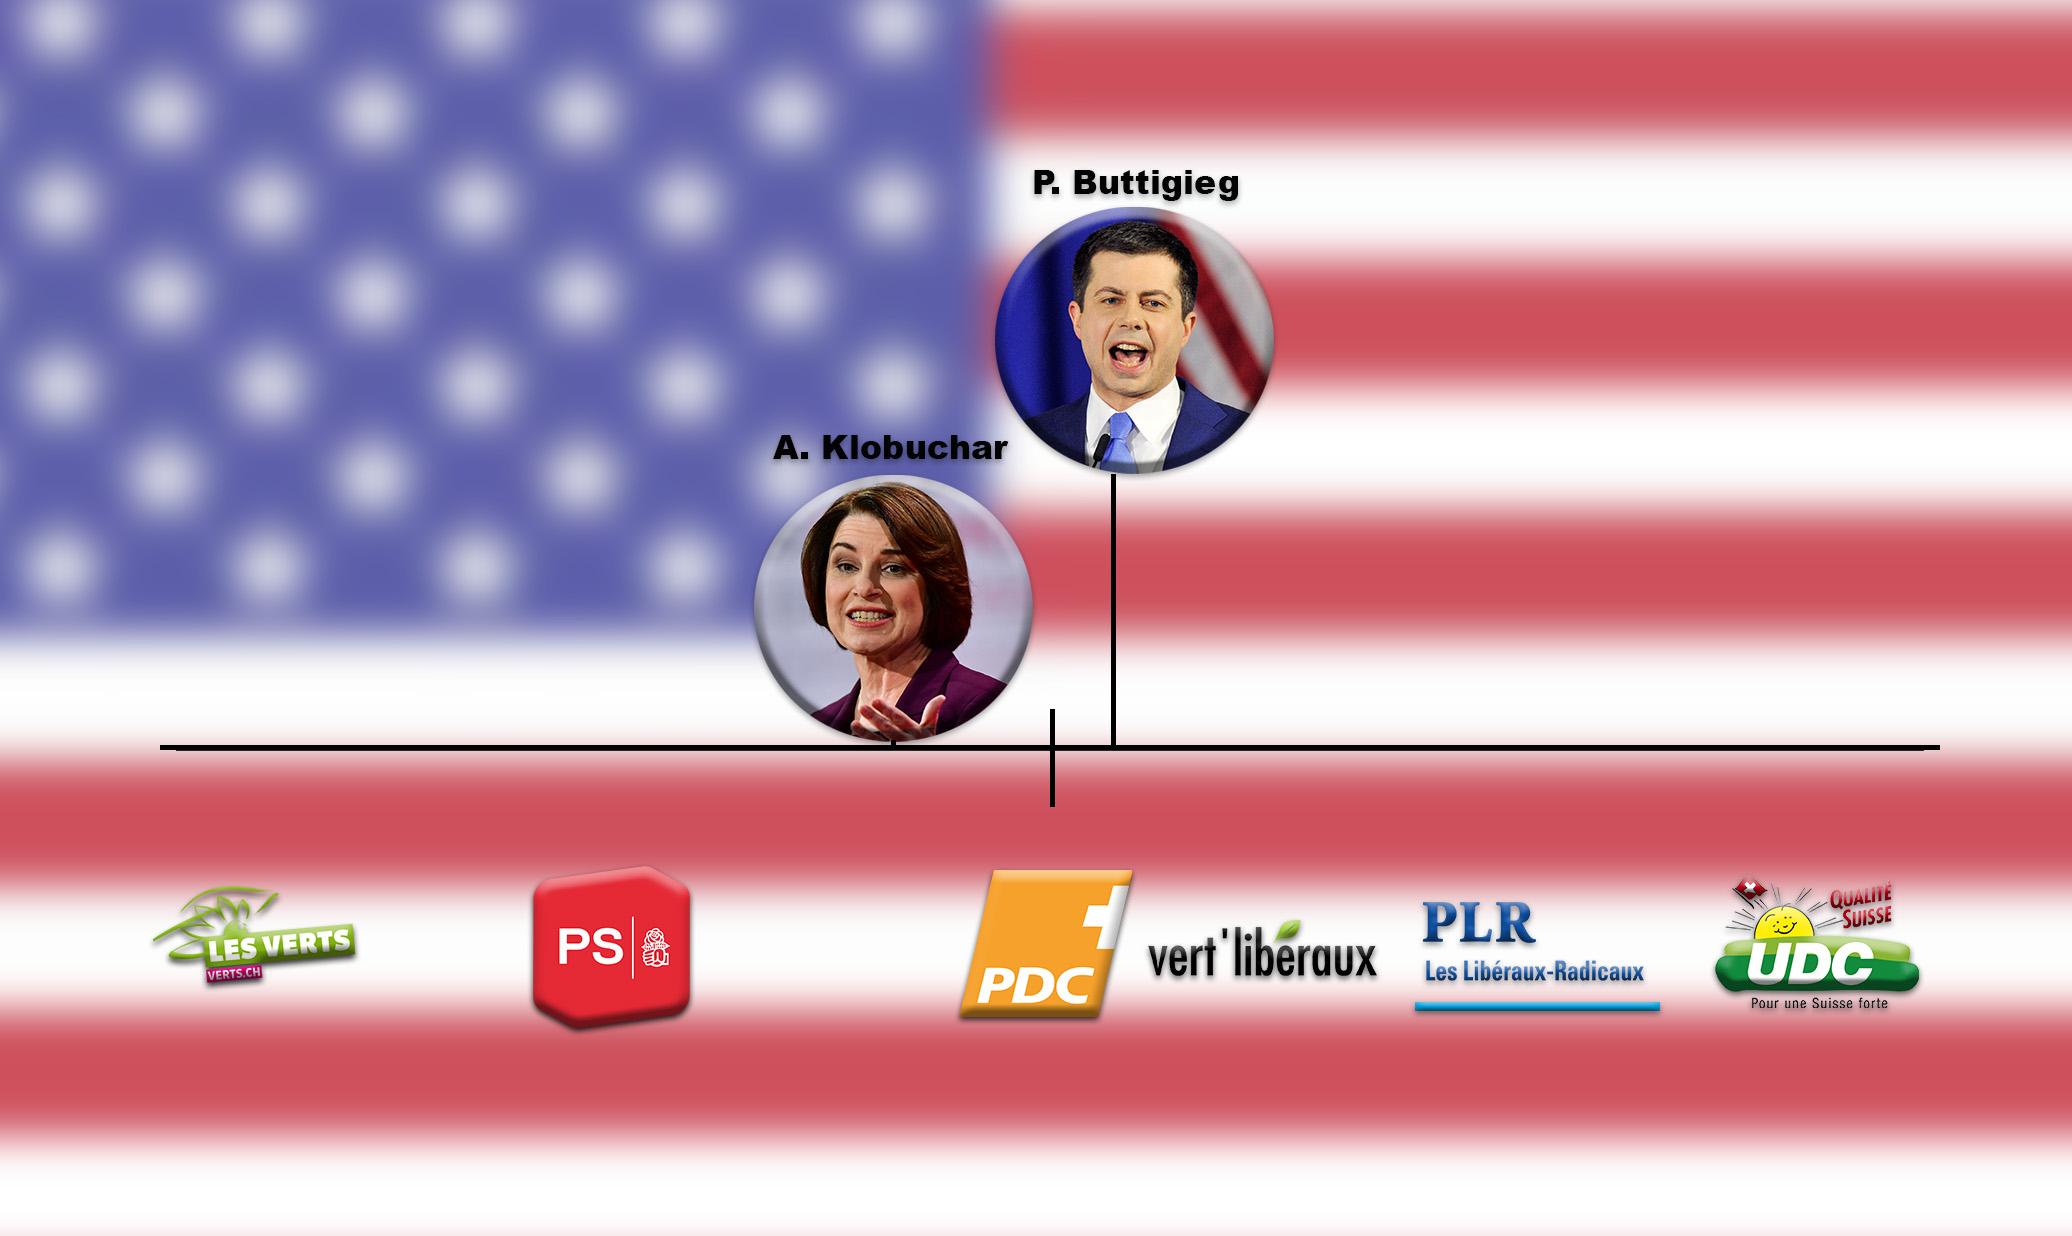 Les candidats Amy Klobuchar et Pete Buttigieg se rapprocheraient du Parti Démocrate Chrétien (PDC) [RTS - Mouna Hussain / Guillaume Martinez]